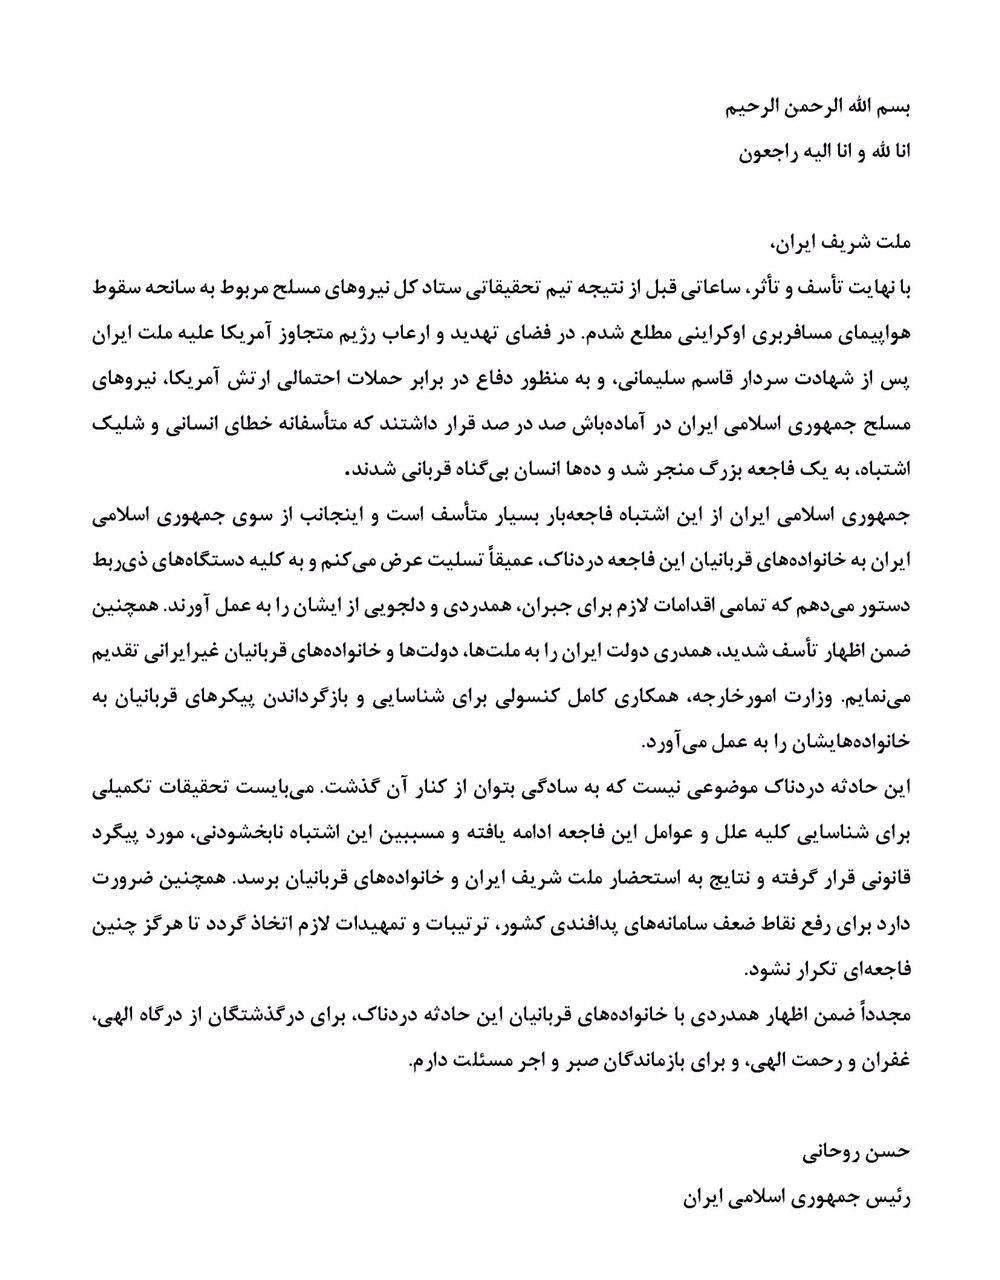 بیانیه روحانی خطاب به ملت درباره سقوط هواپیمای بویینگ